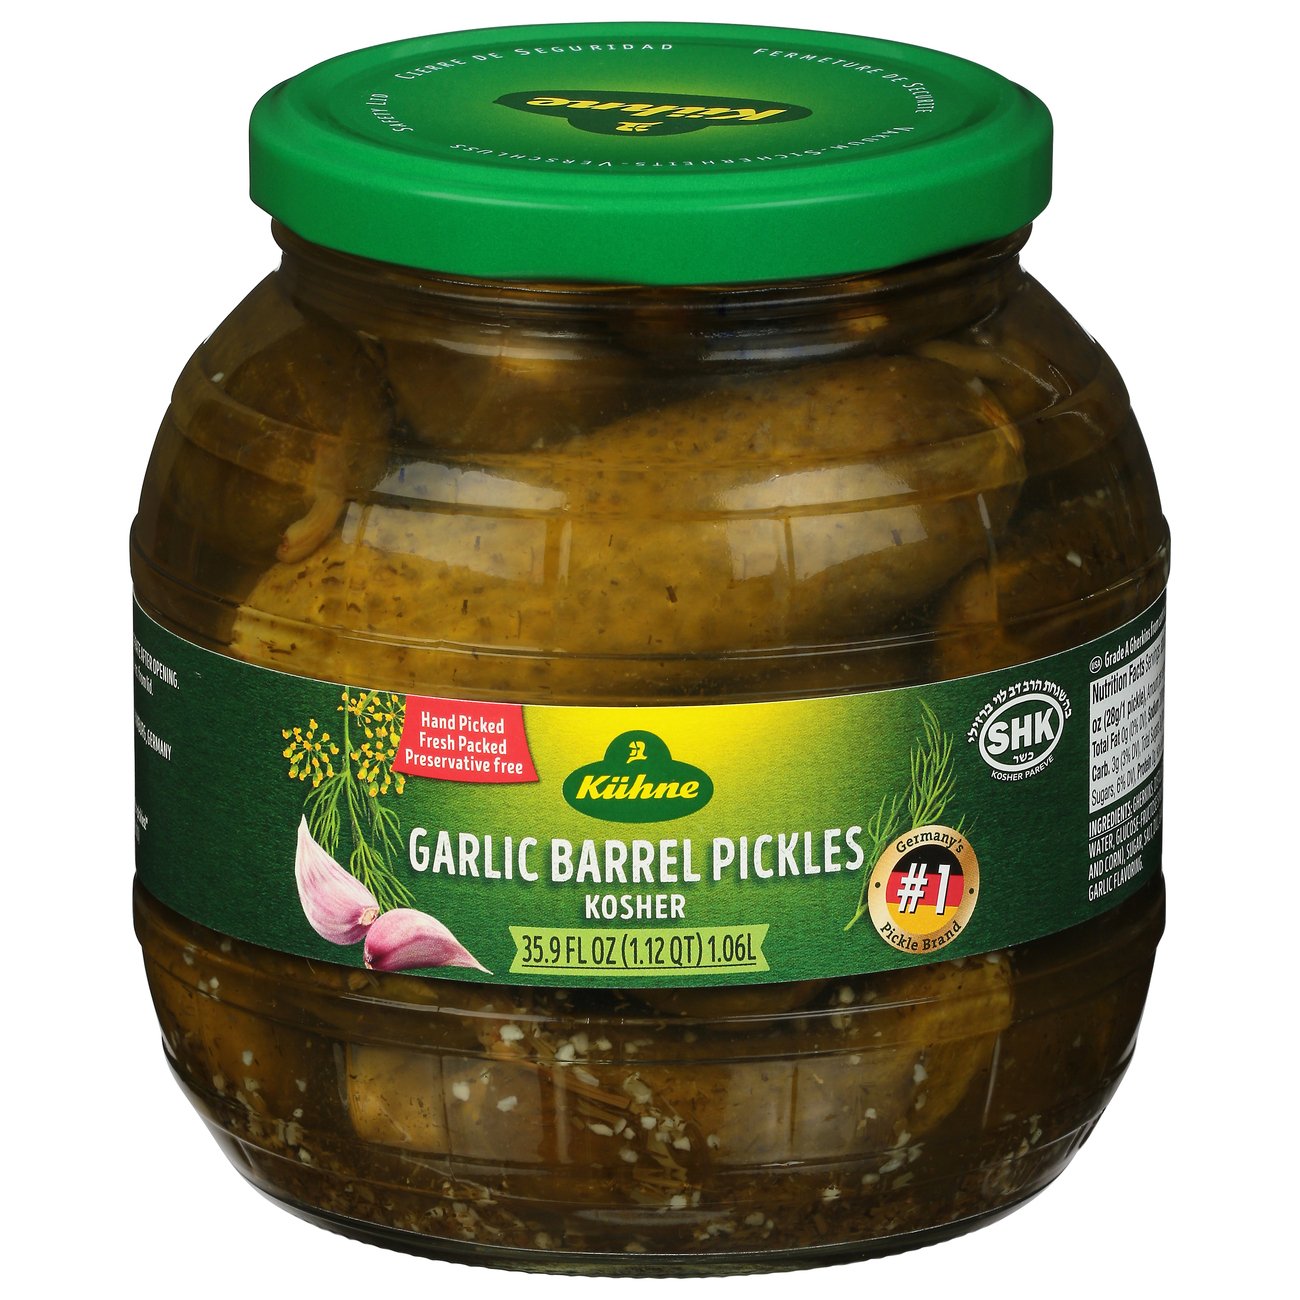 Kuhne Garlic Barrel Pickles - Shop Vegetables at H-E-B Block And Barrel Pickles For Sale